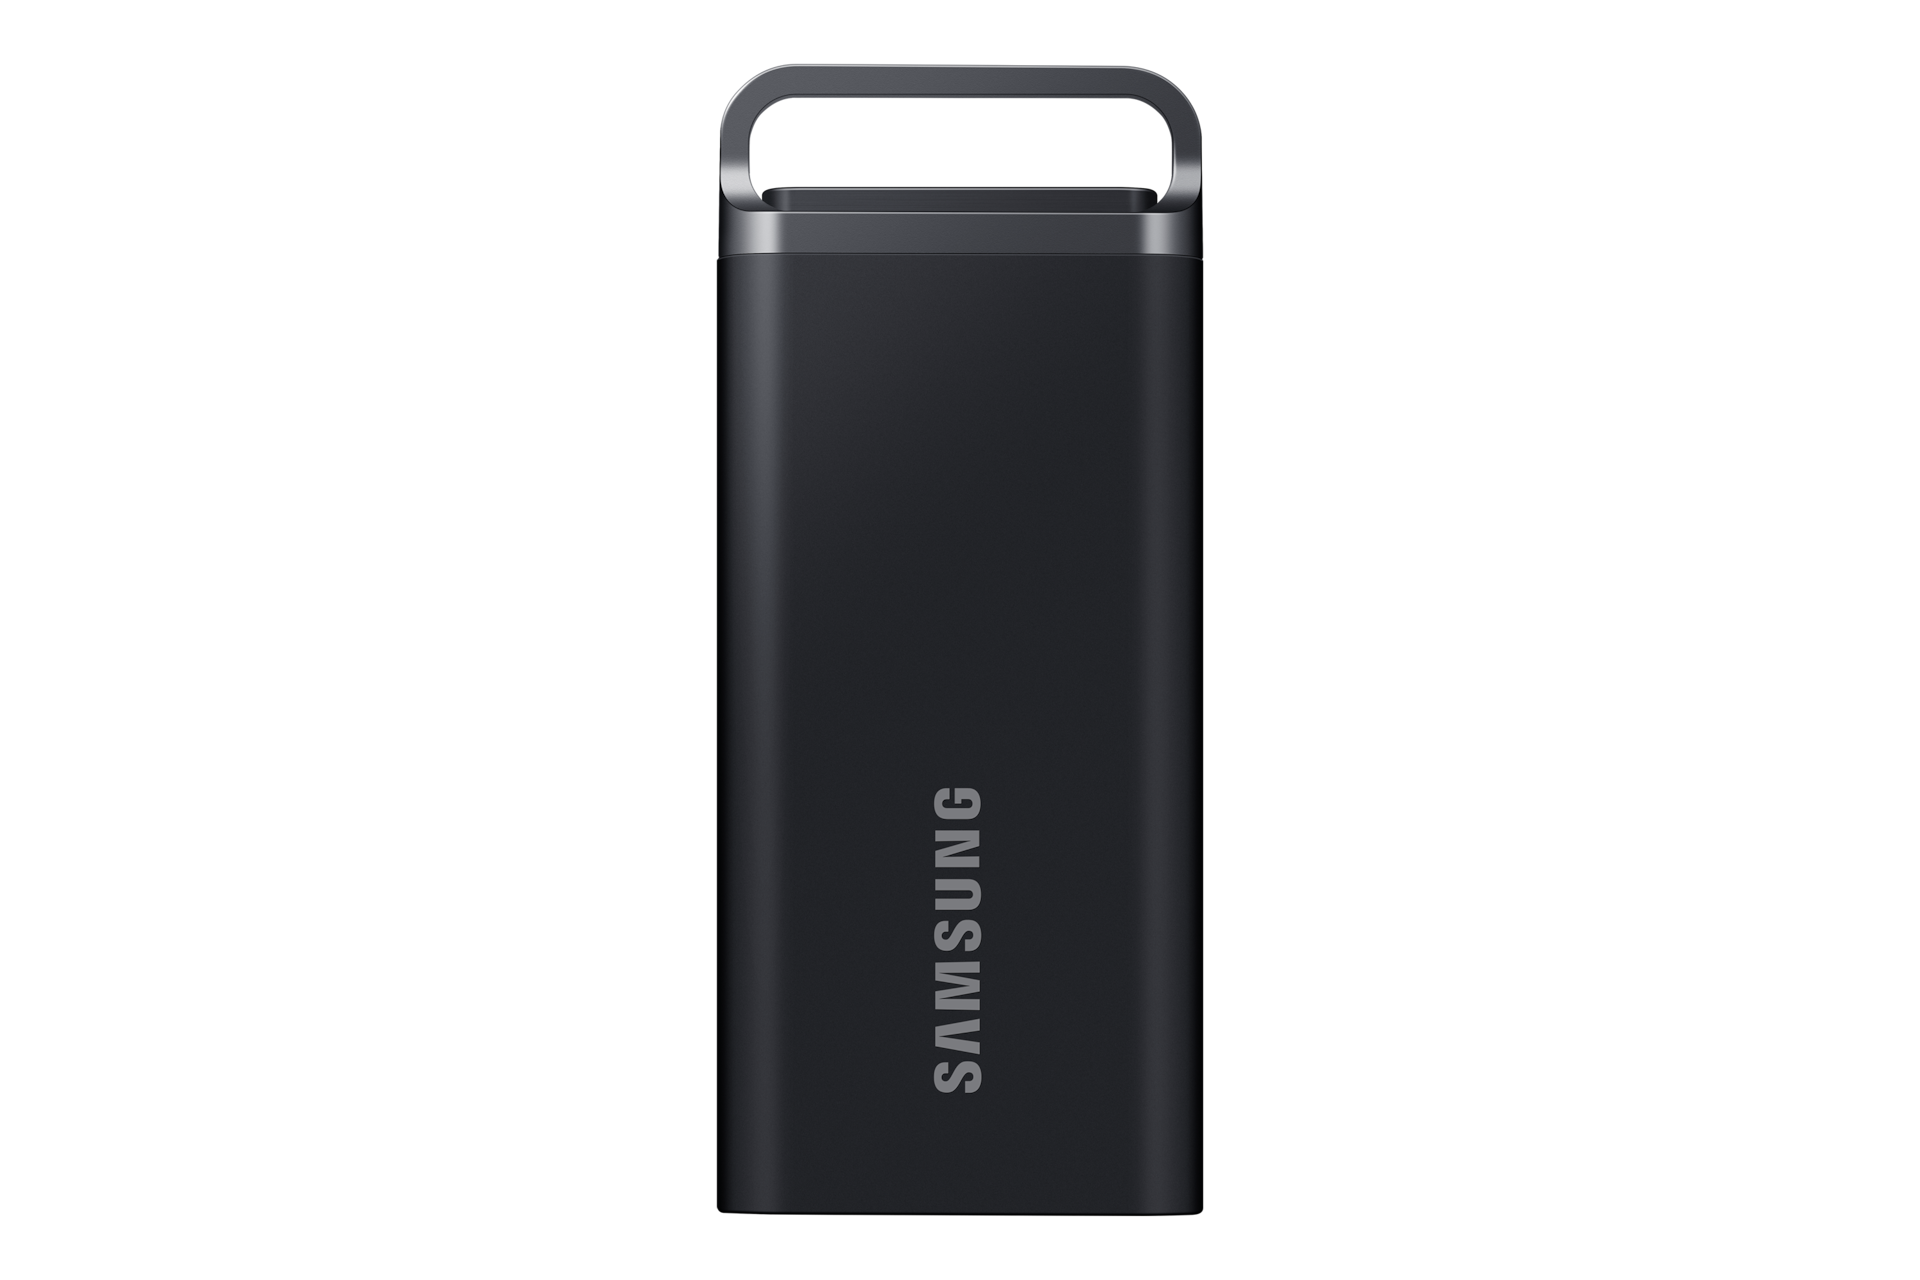 SSD Externe Samsung T5 : bon plan pour ce kit de stockage de 1 To